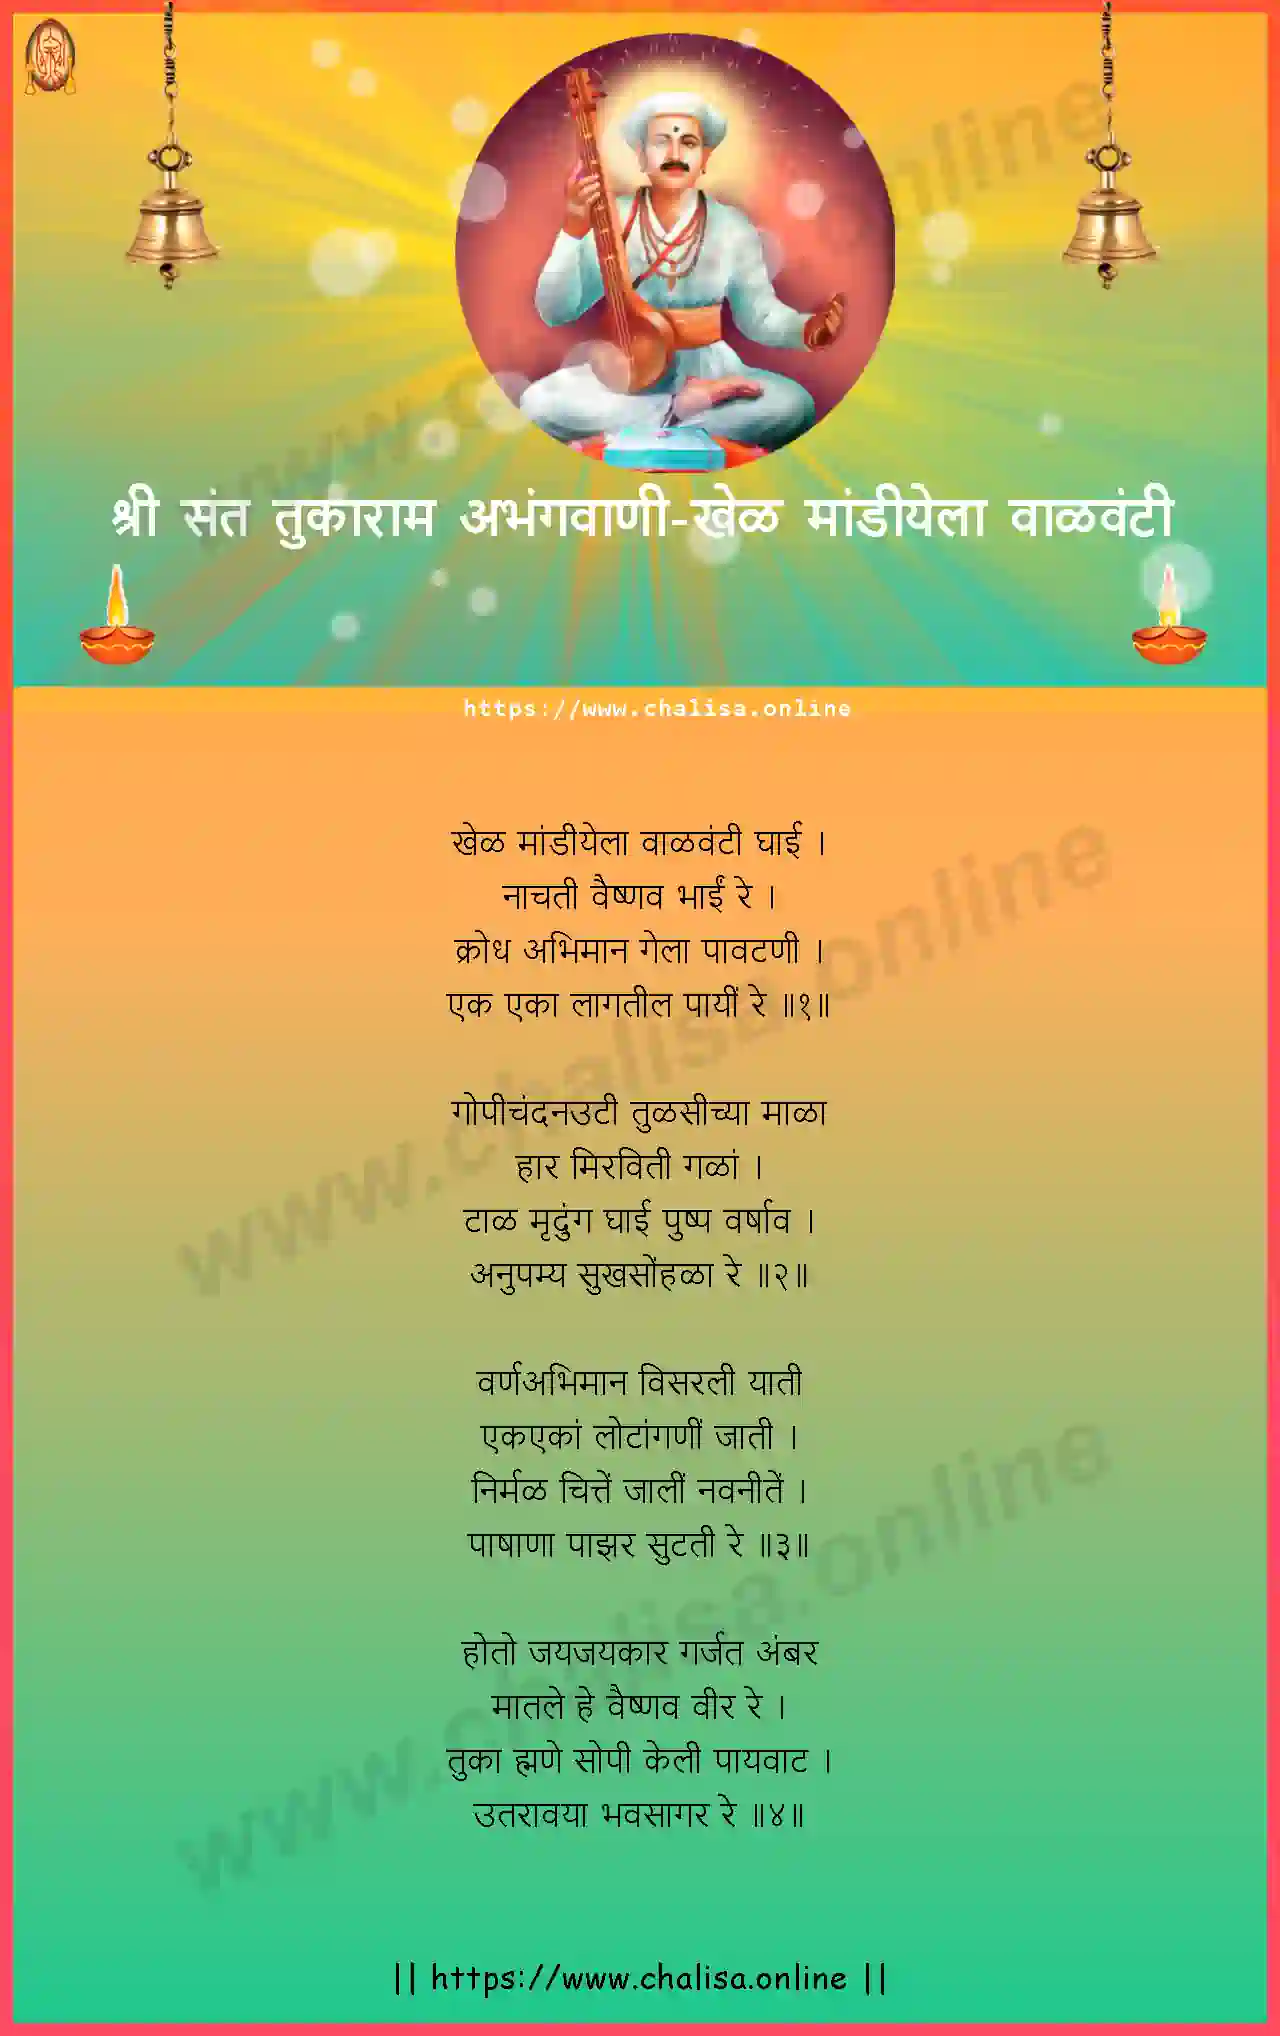 khel-mandiyela-valavanti-shri-sant-tukaram-abhang-marathi-lyrics-download